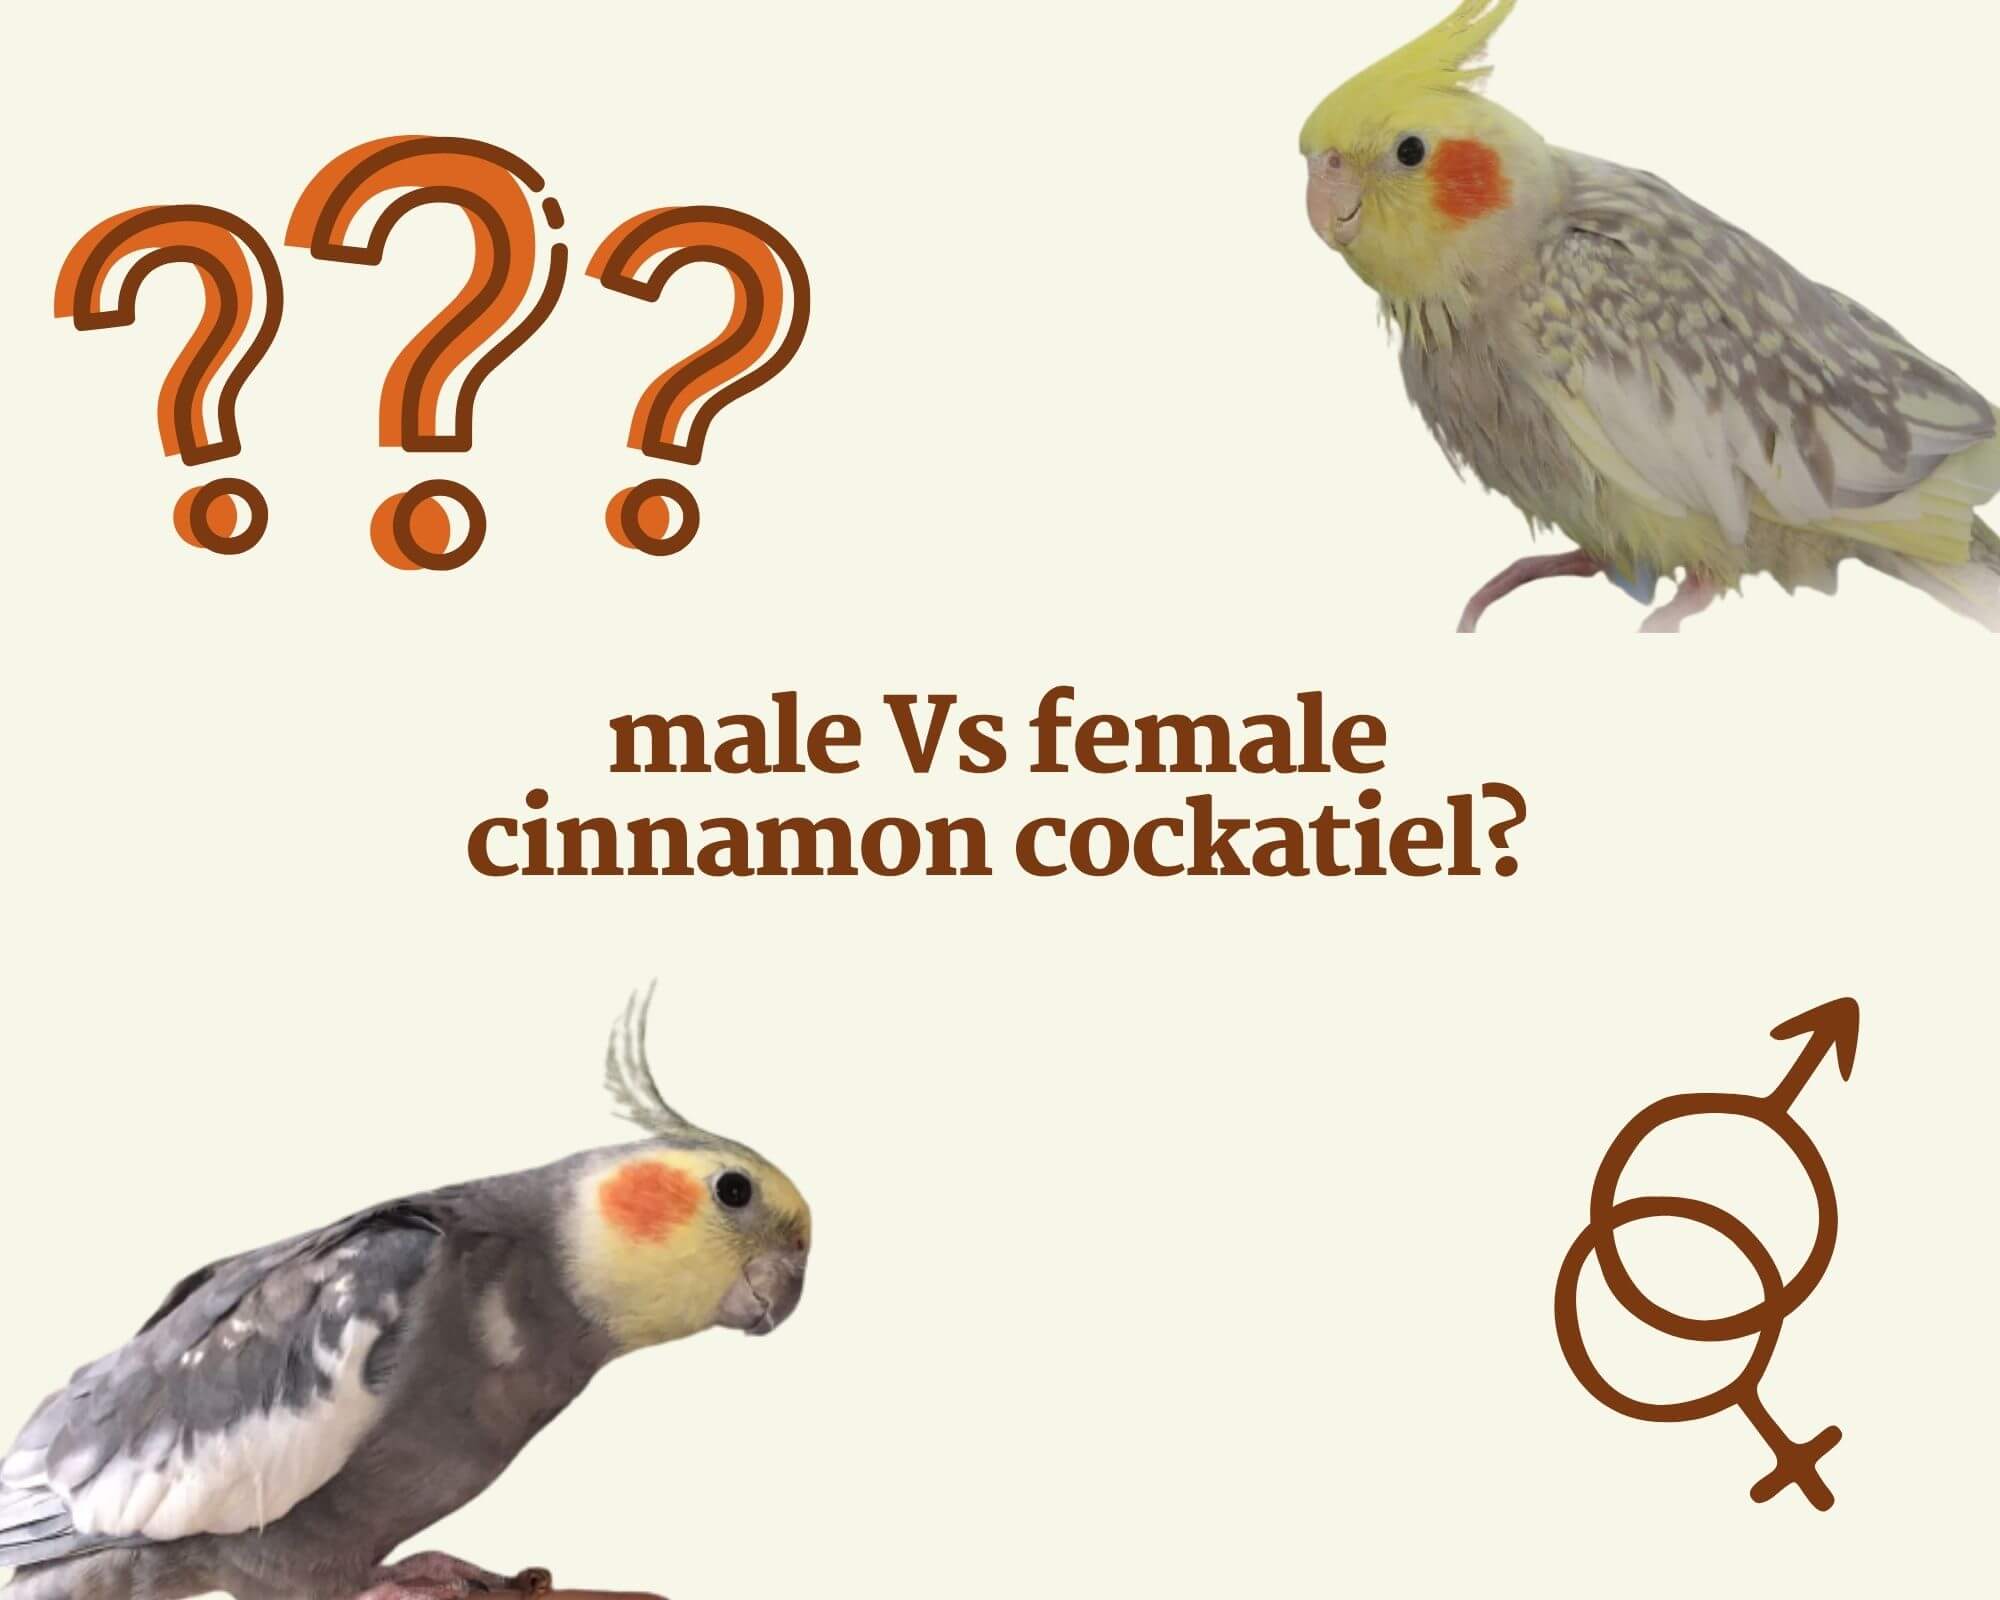 cinnamon cockatiel male or female